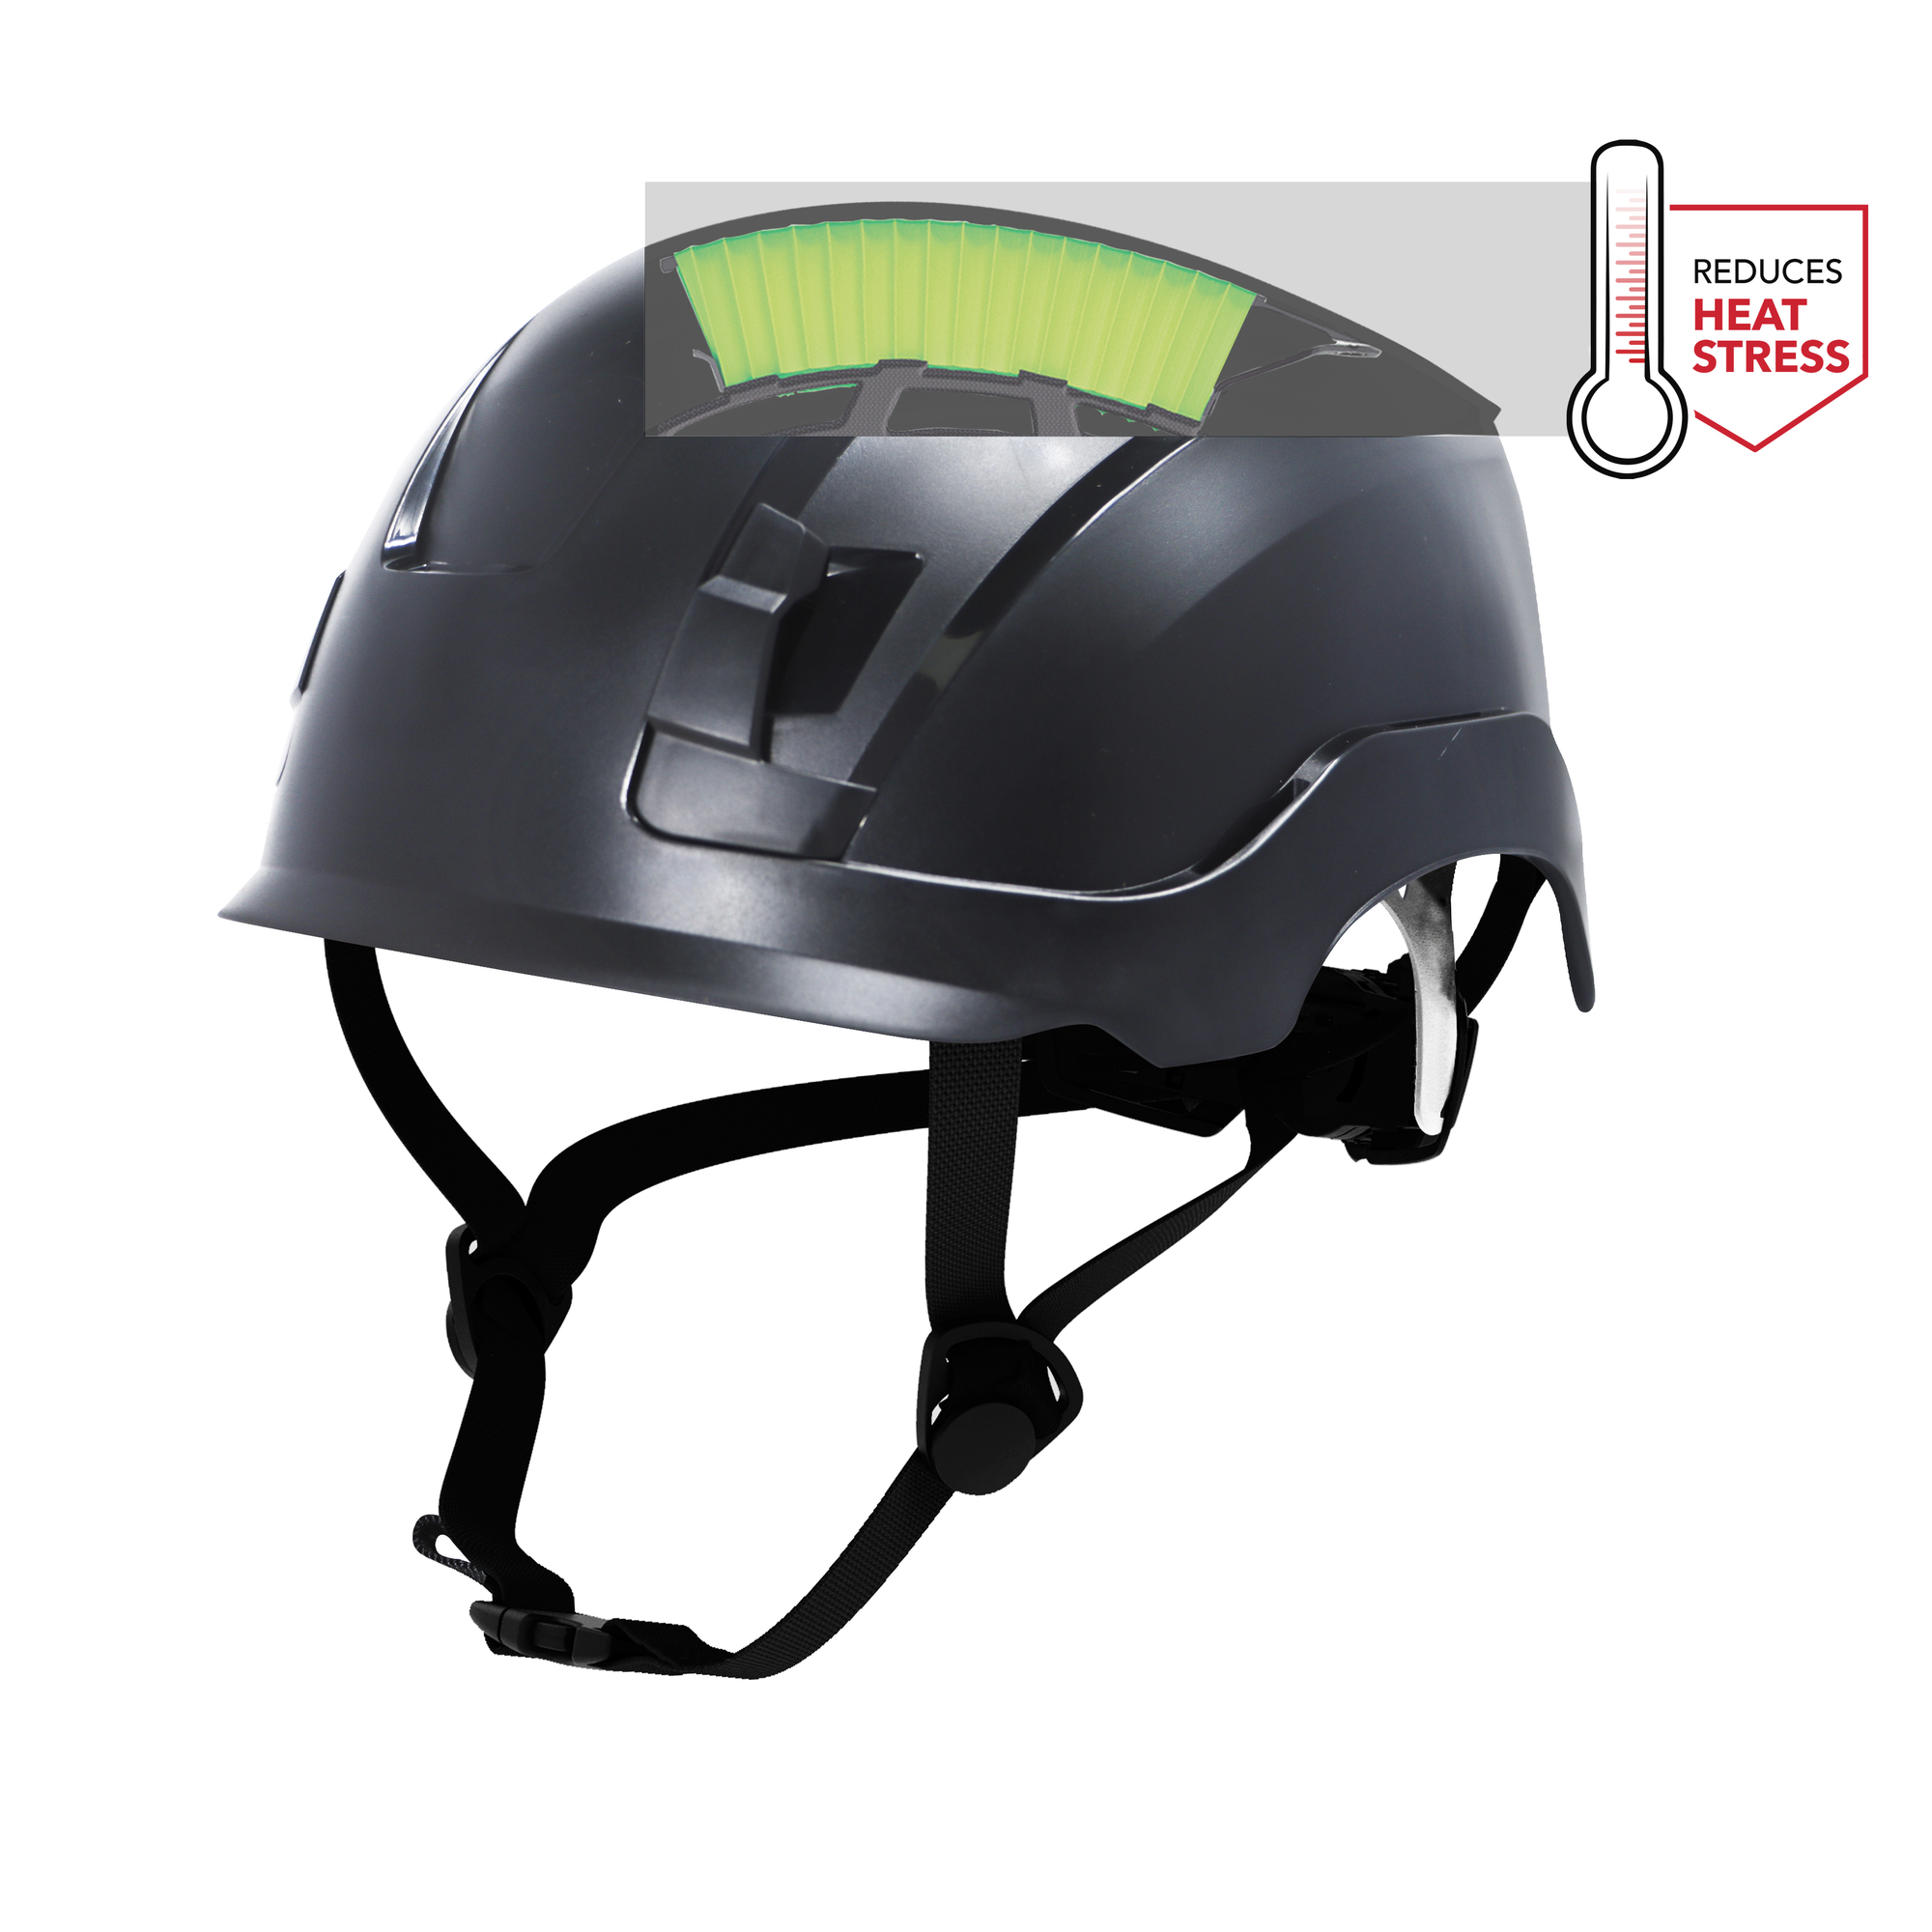 General Electric, Low-Profile Black GH400 Safety Helmet Vented, Hard Hat Style Helmet, Hat Size Adjustable, Color Black, Model GH400BK